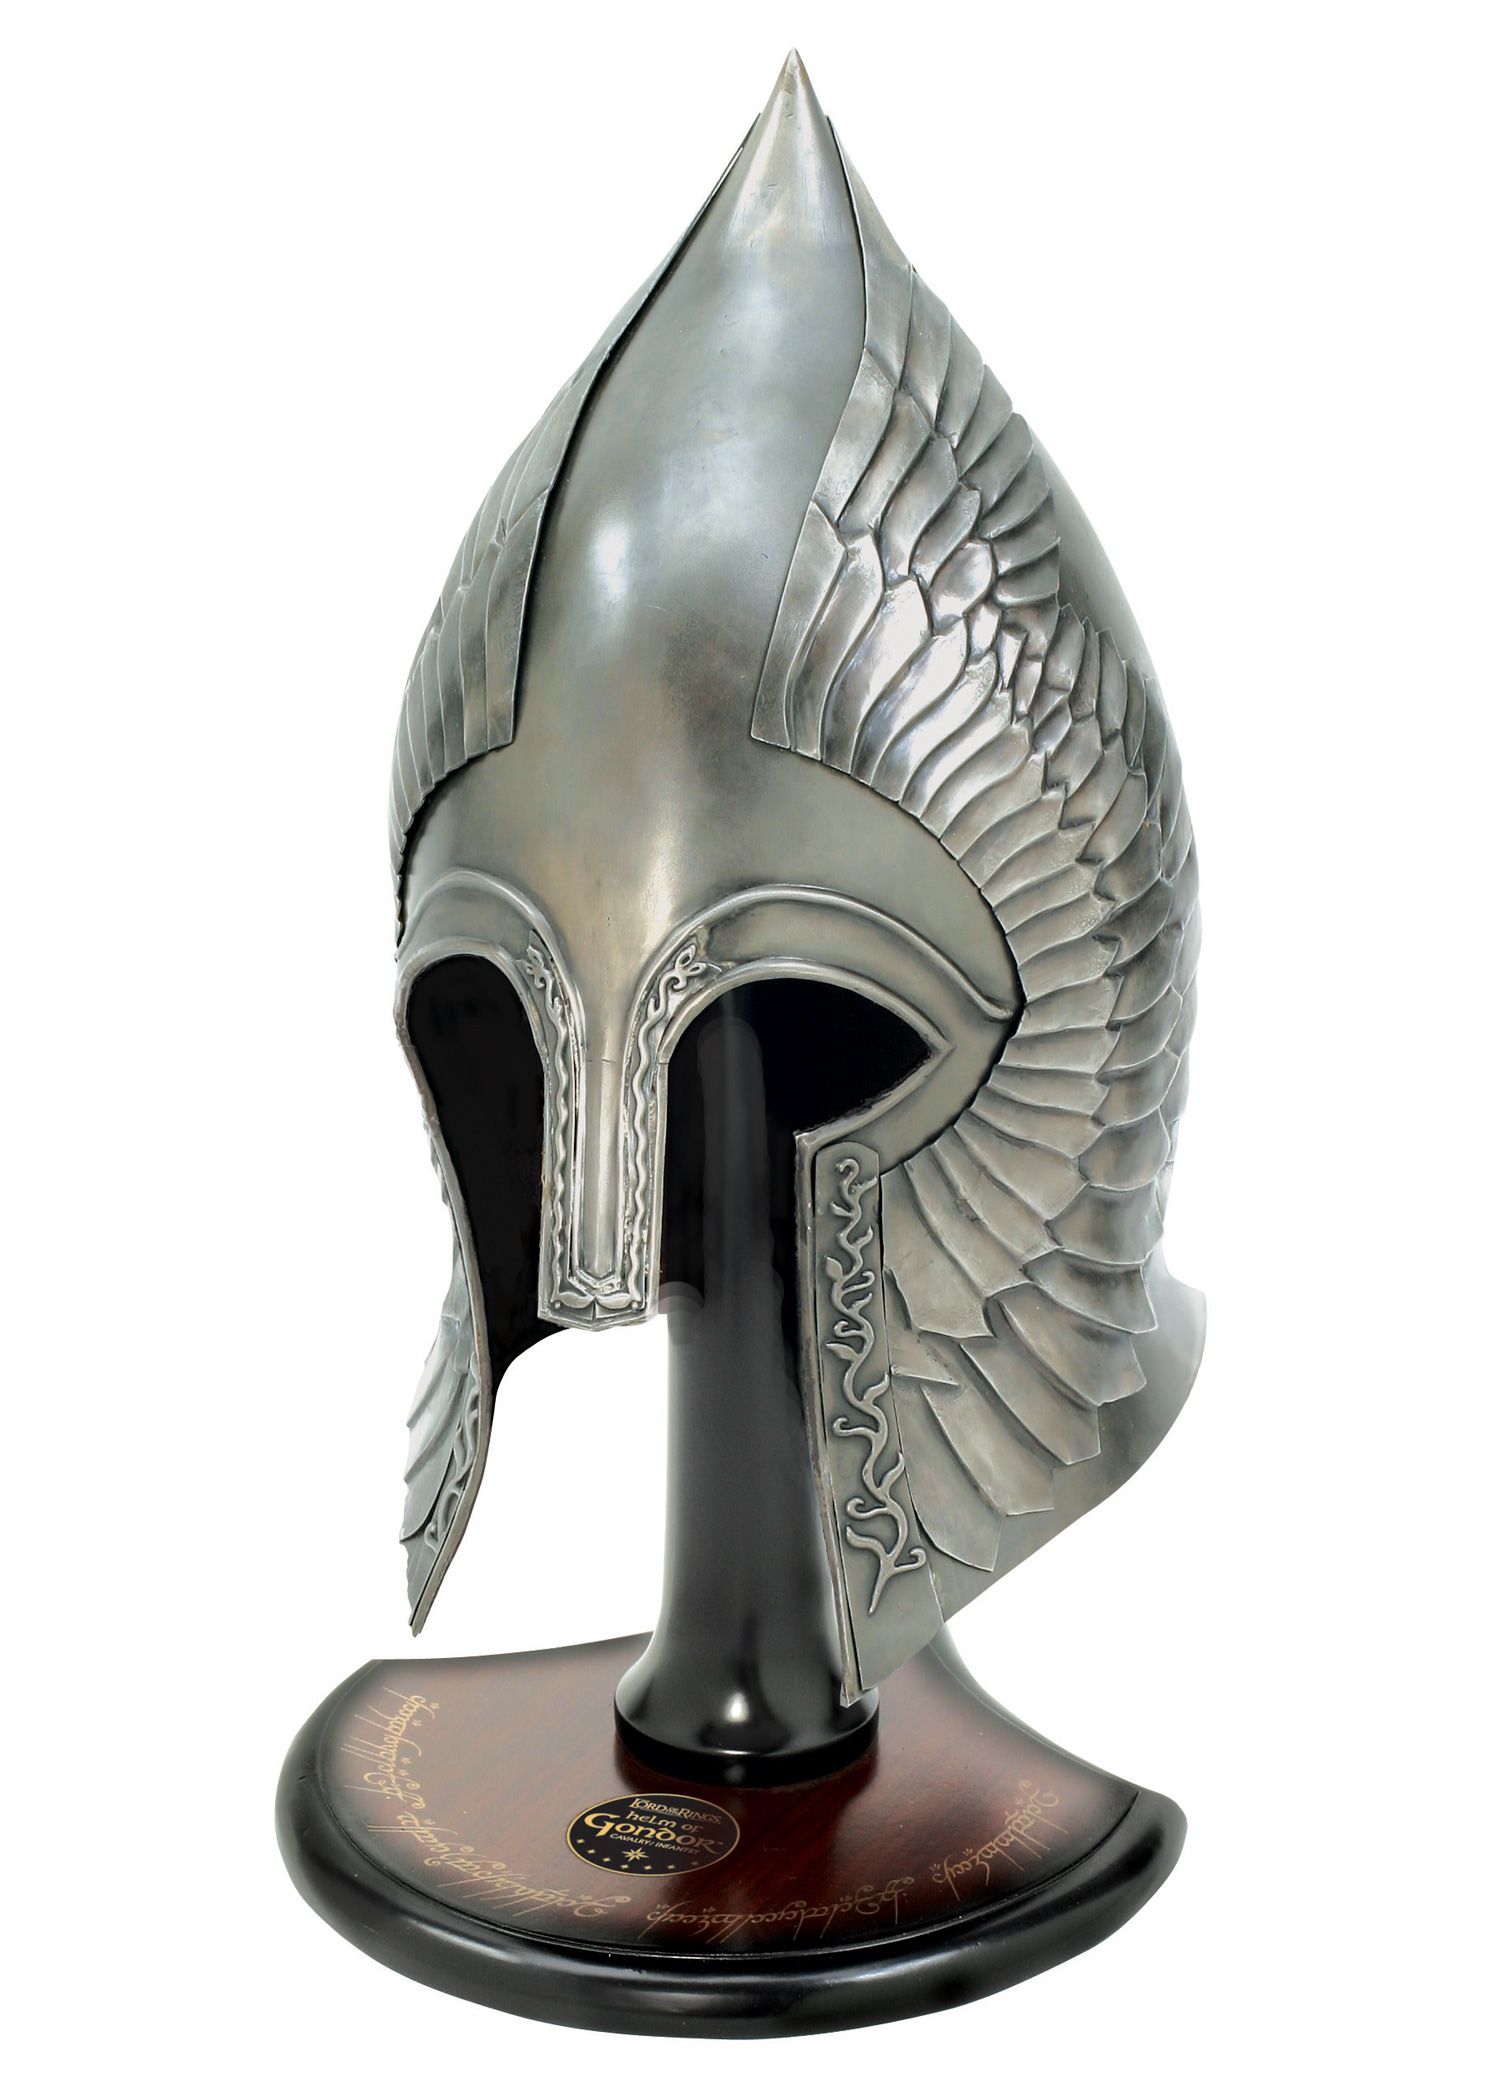 Herr der Ringe - Helm der Infanterie Gondors mit Ständer